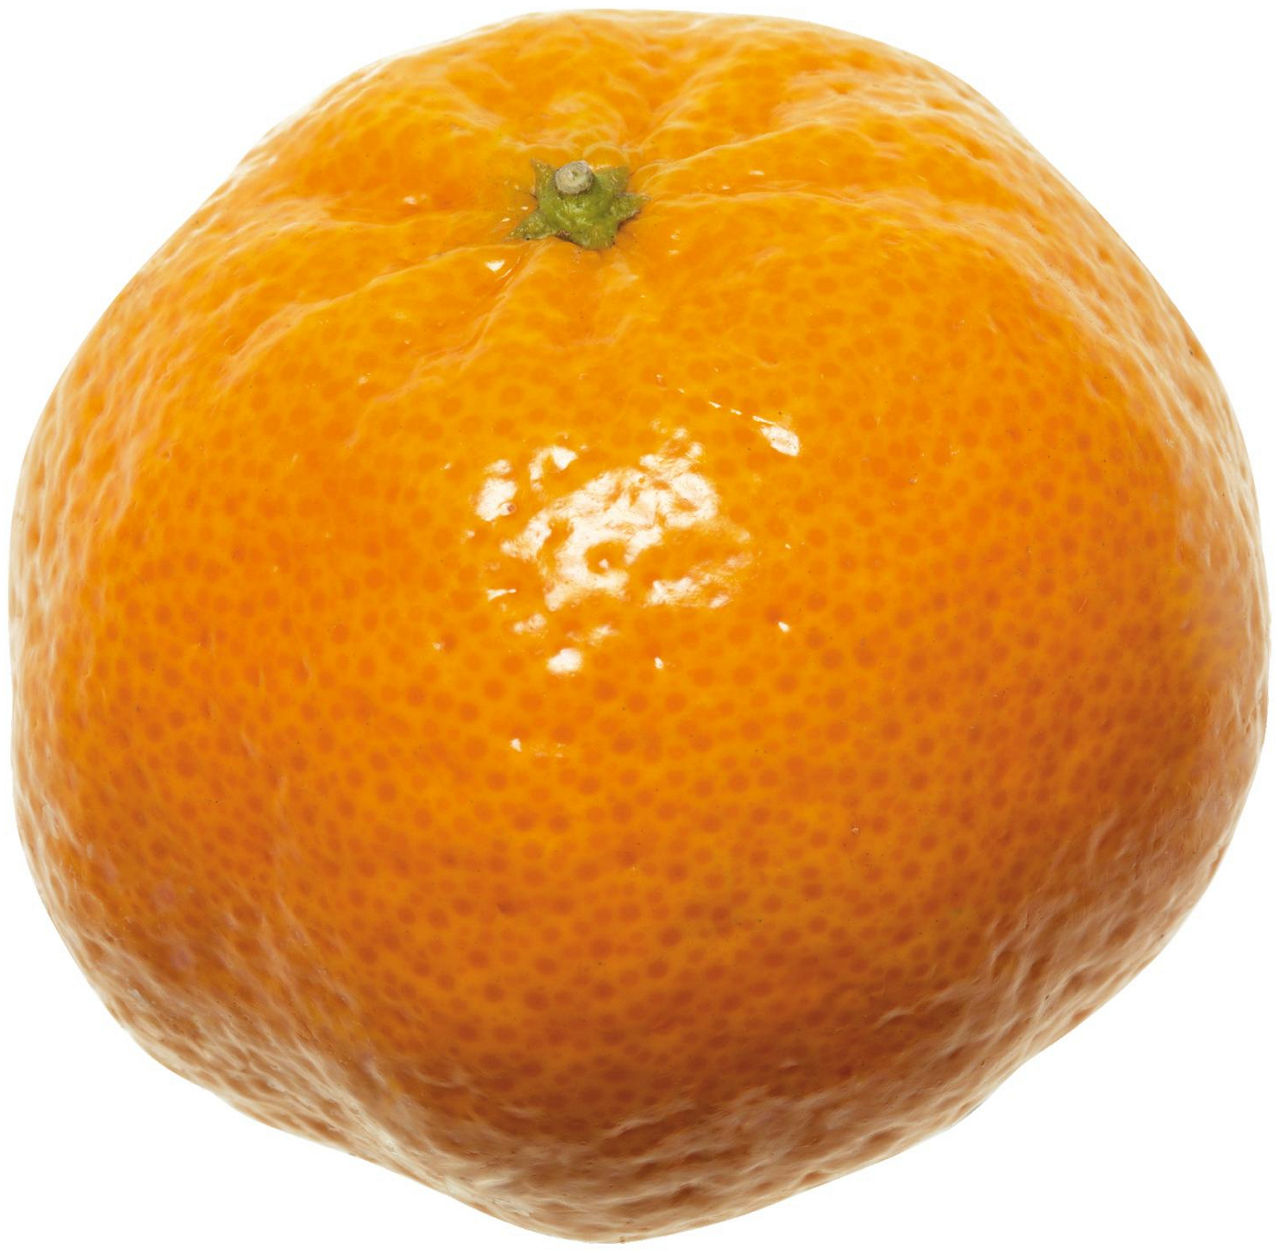 Mandarini tardivo di ciaculli kg 1